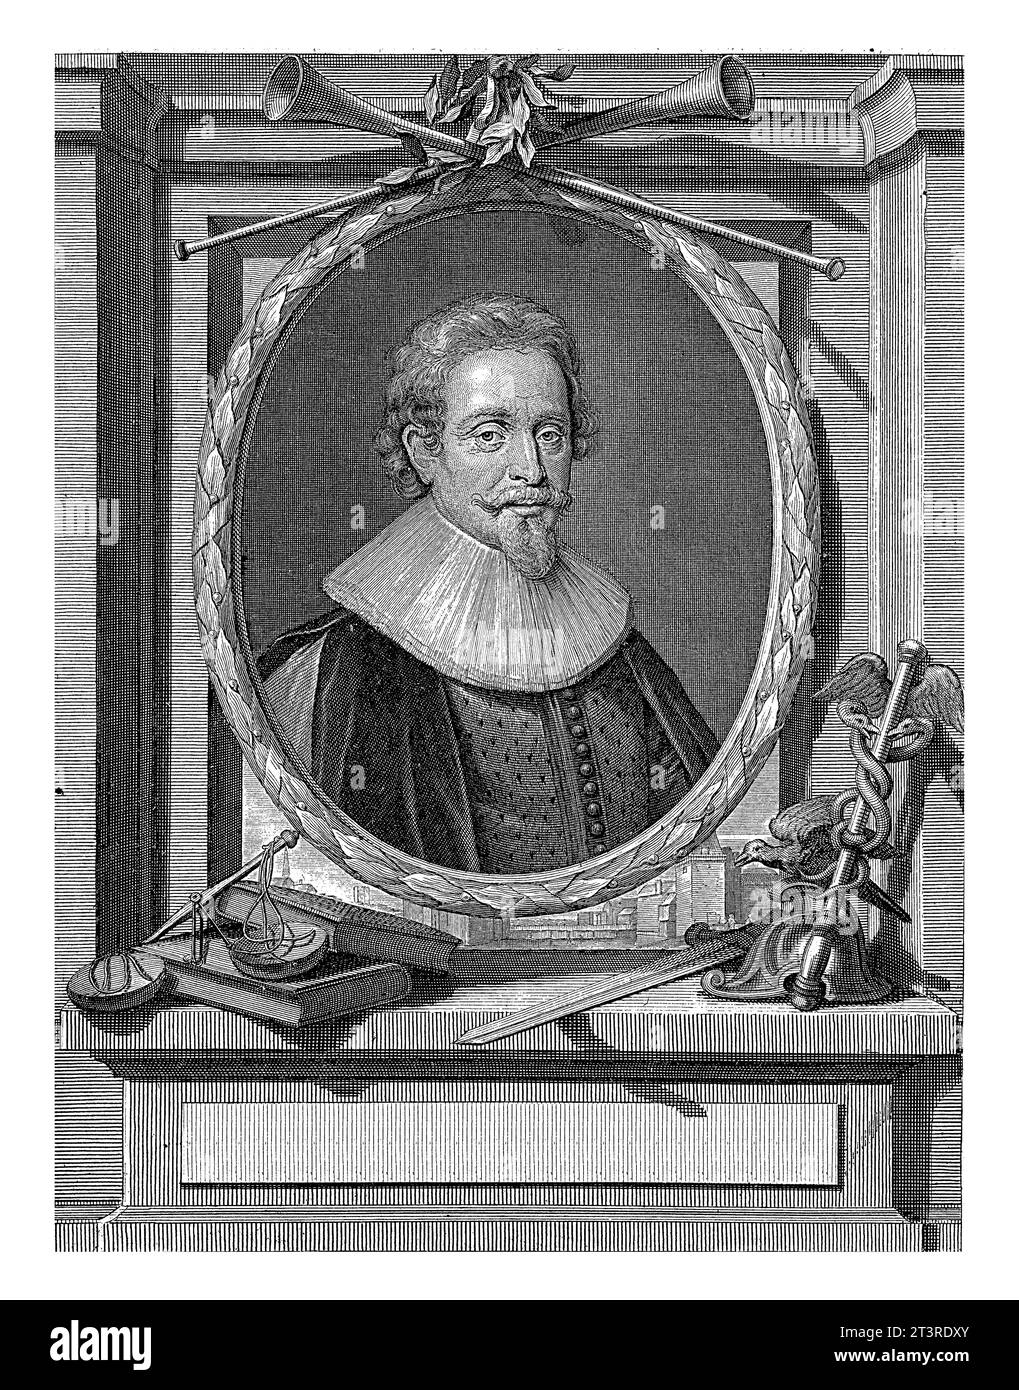 Portrait de Hugo de Groot, Pieter van Gunst, d'après Michiel Jansz van Mierevelt, 1710 - 1731 Hugo de Groot, érudit néerlandais. Au-dessus du portrait deux trump Banque D'Images